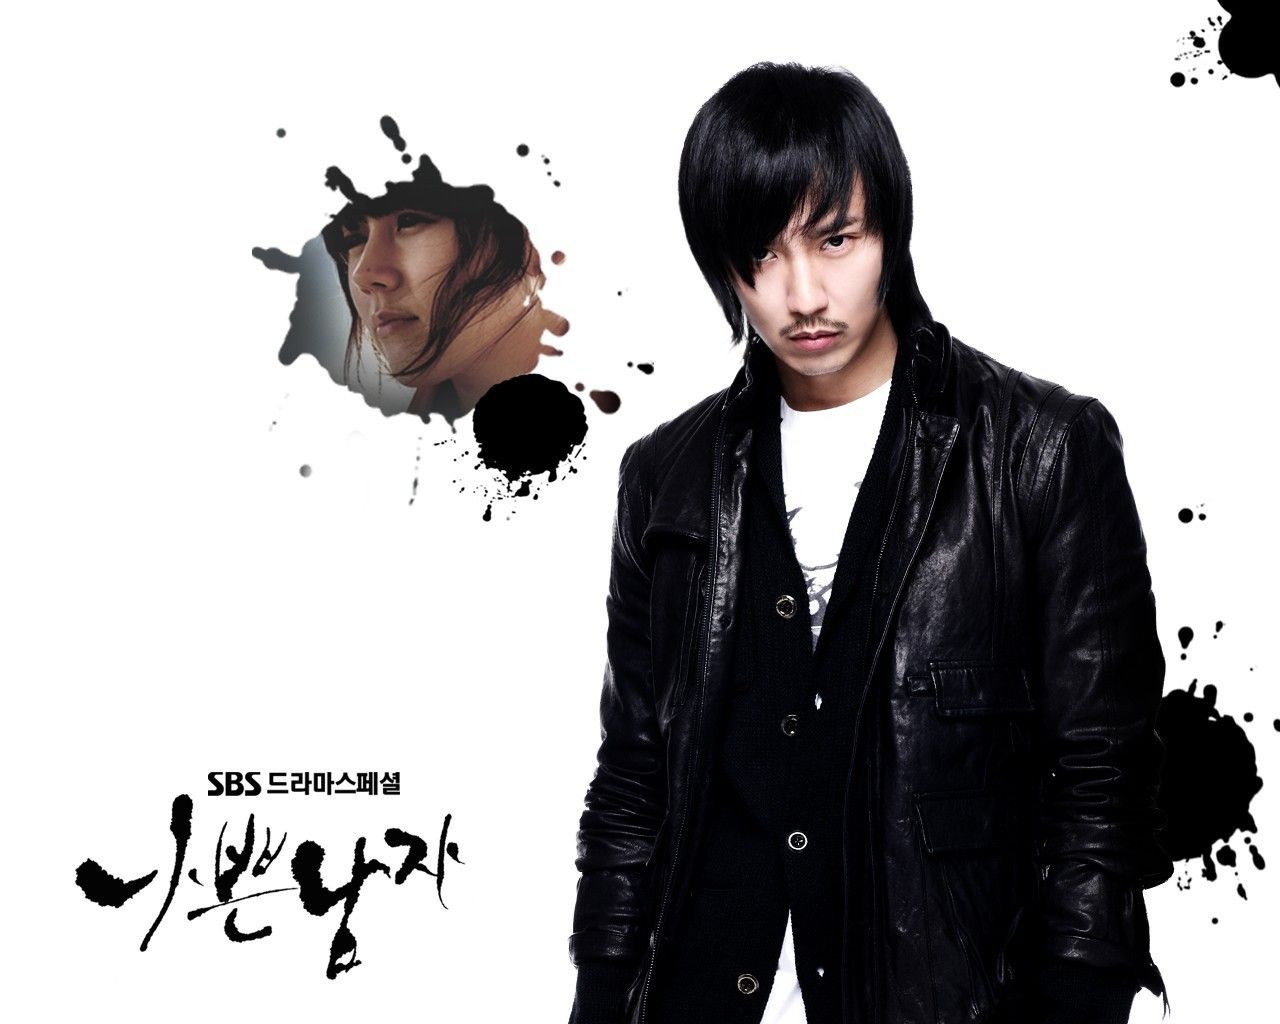 Bad guy - Korean Dramas Wallpaper 21700373 - Fanpop